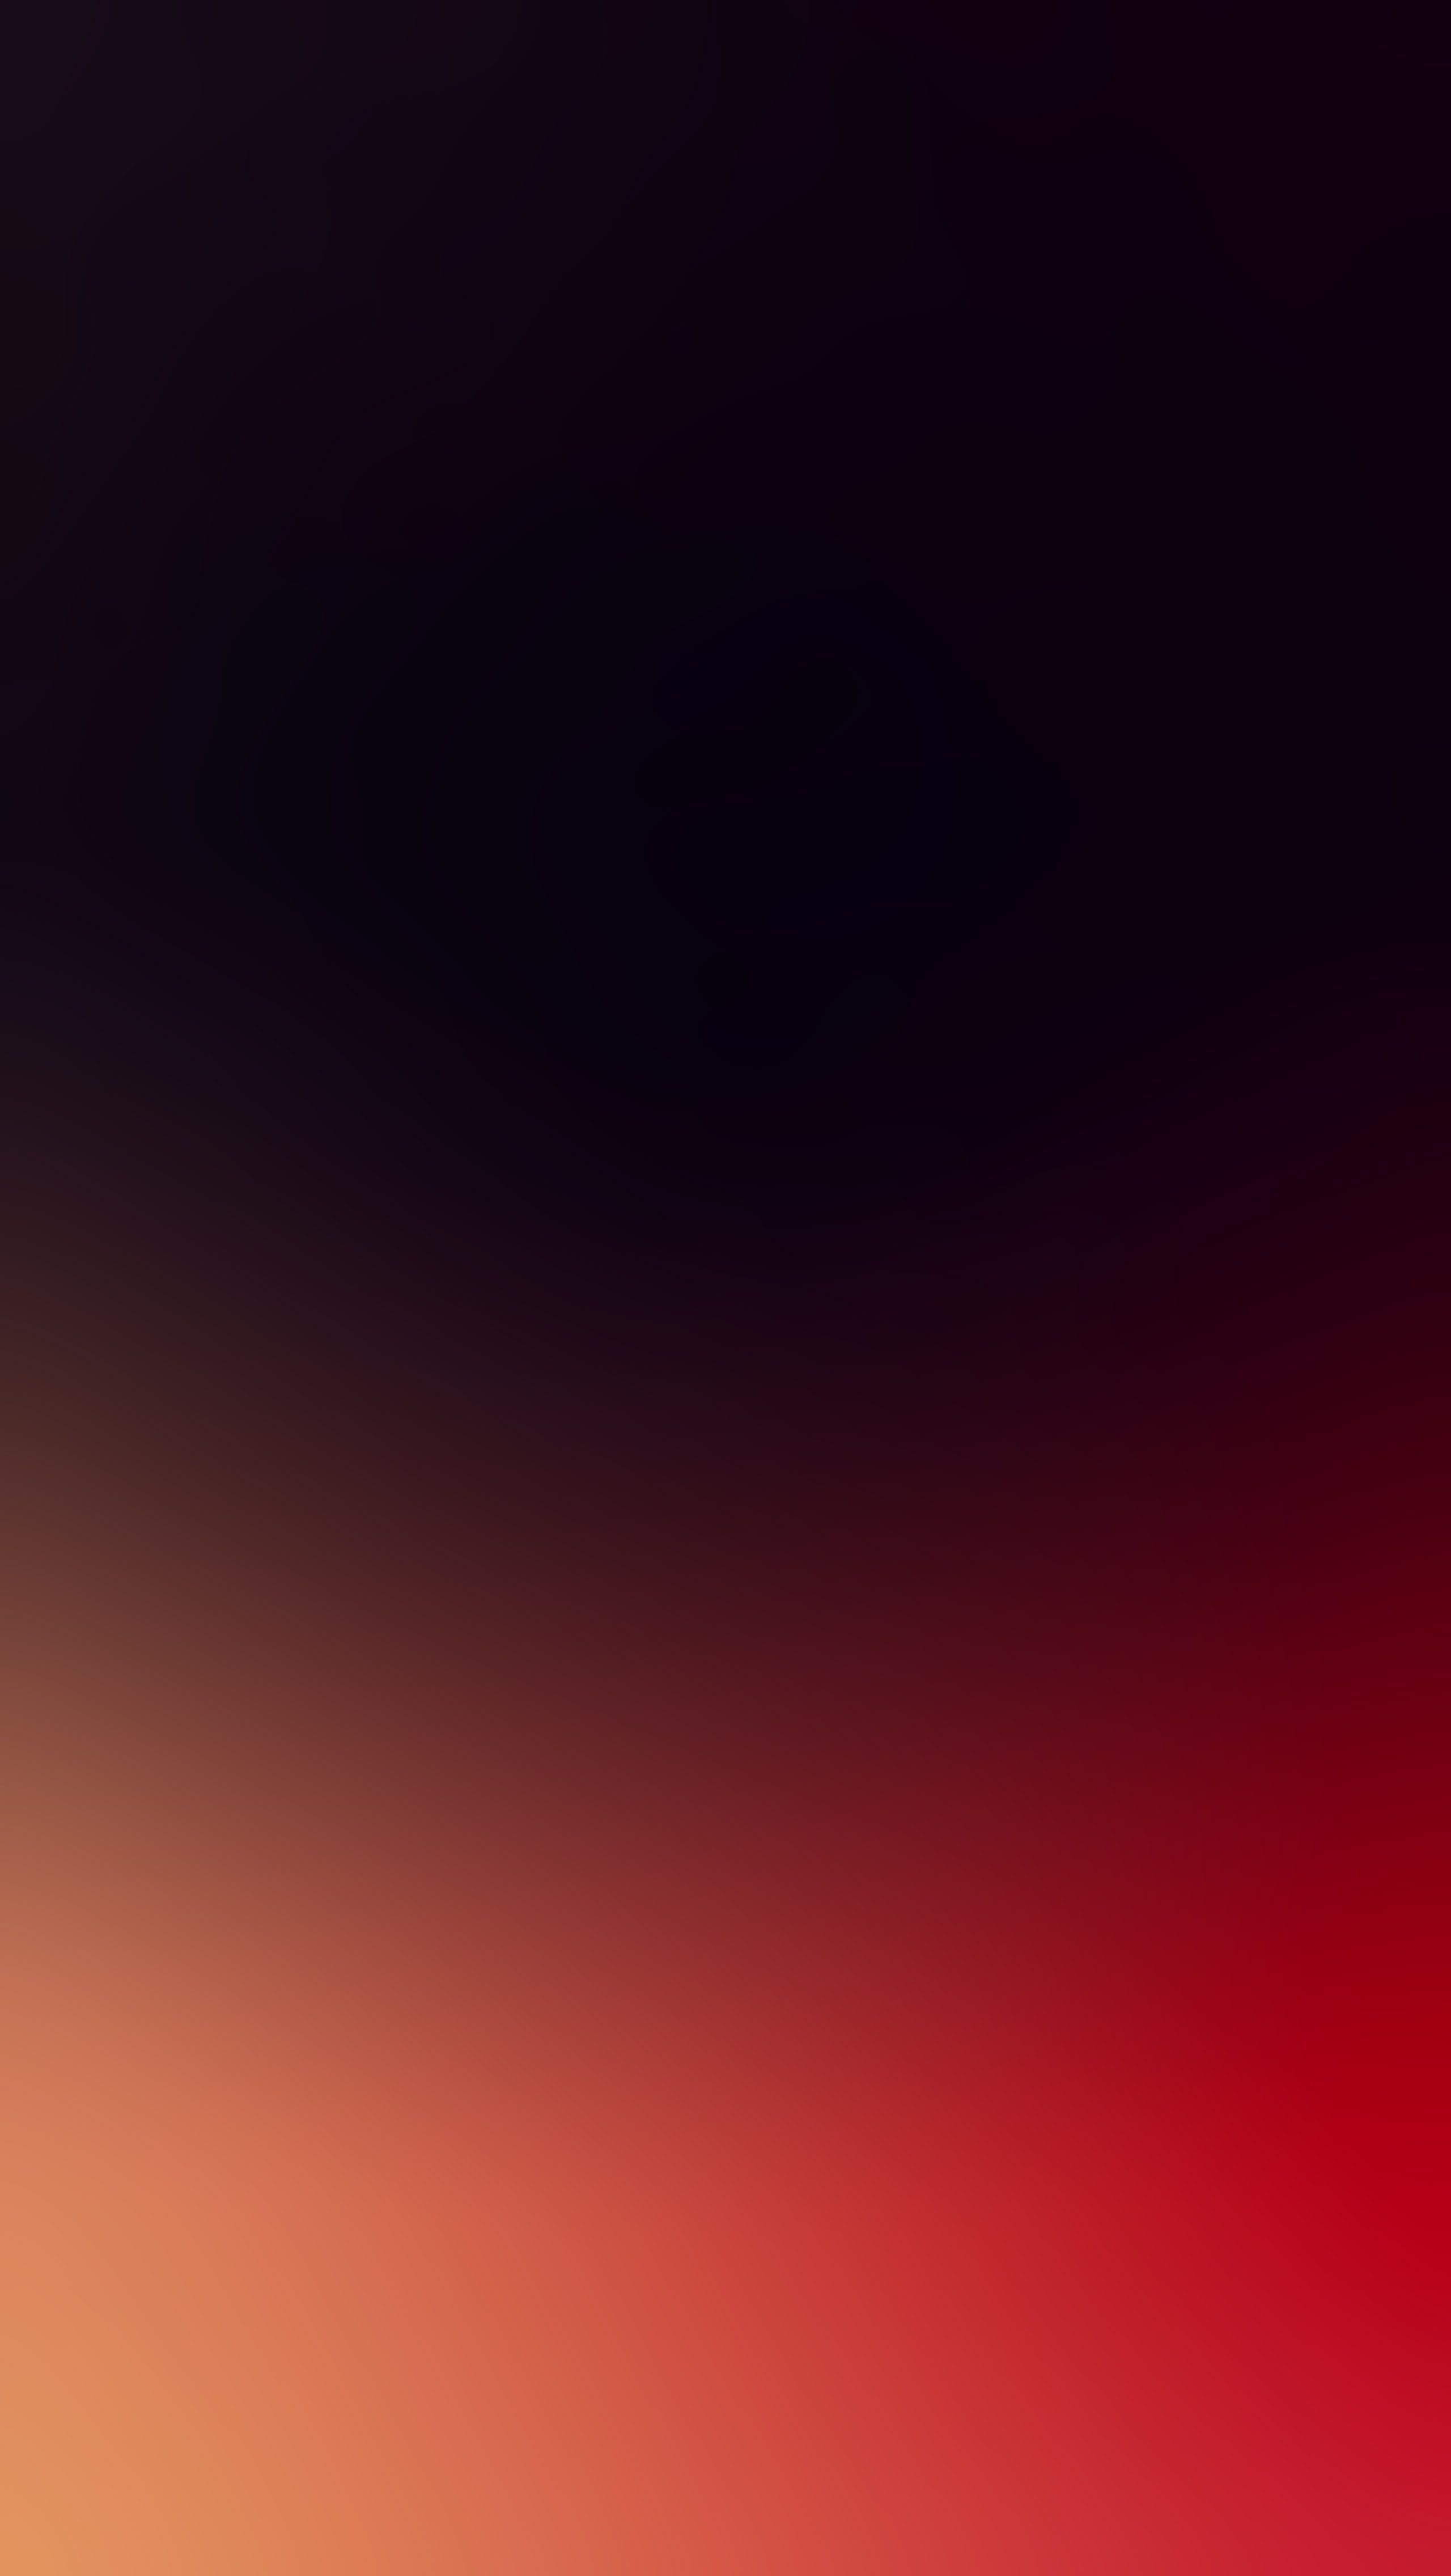 fondo de pantalla degradado rojo,negro,rojo,cielo,marrón,naranja